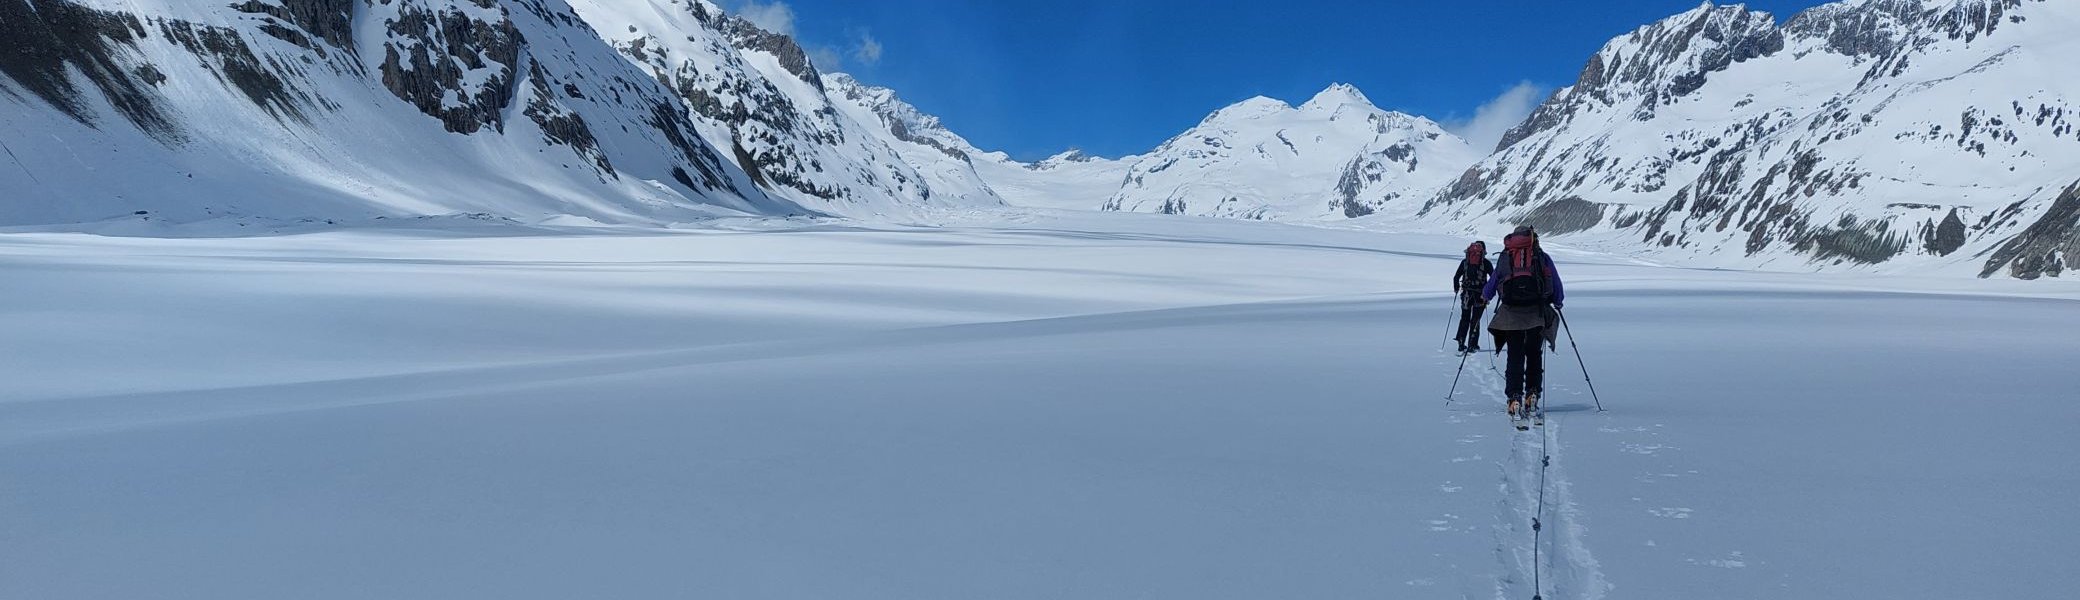 am großen Aletsch-Gletscher | © DAV Sektion Altdorf - Jan Kürschner